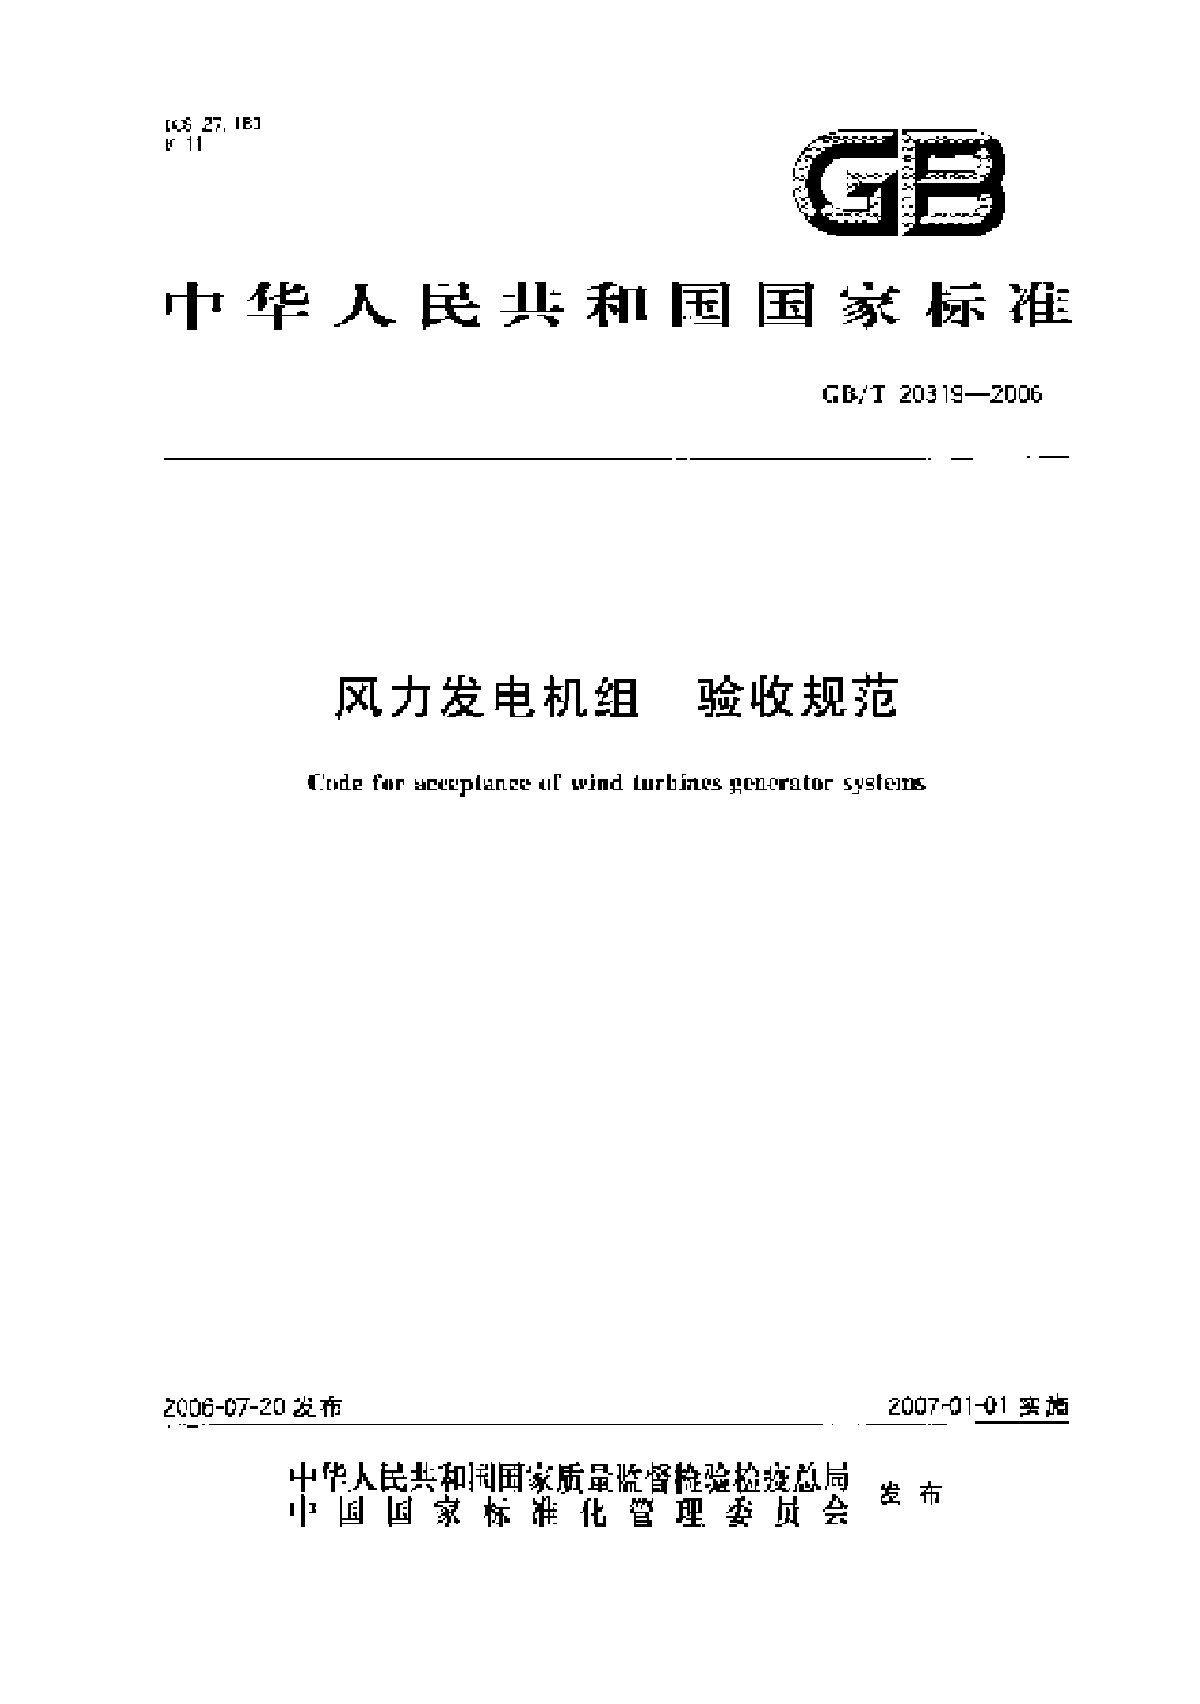 风力发电机组验收规范.pdf